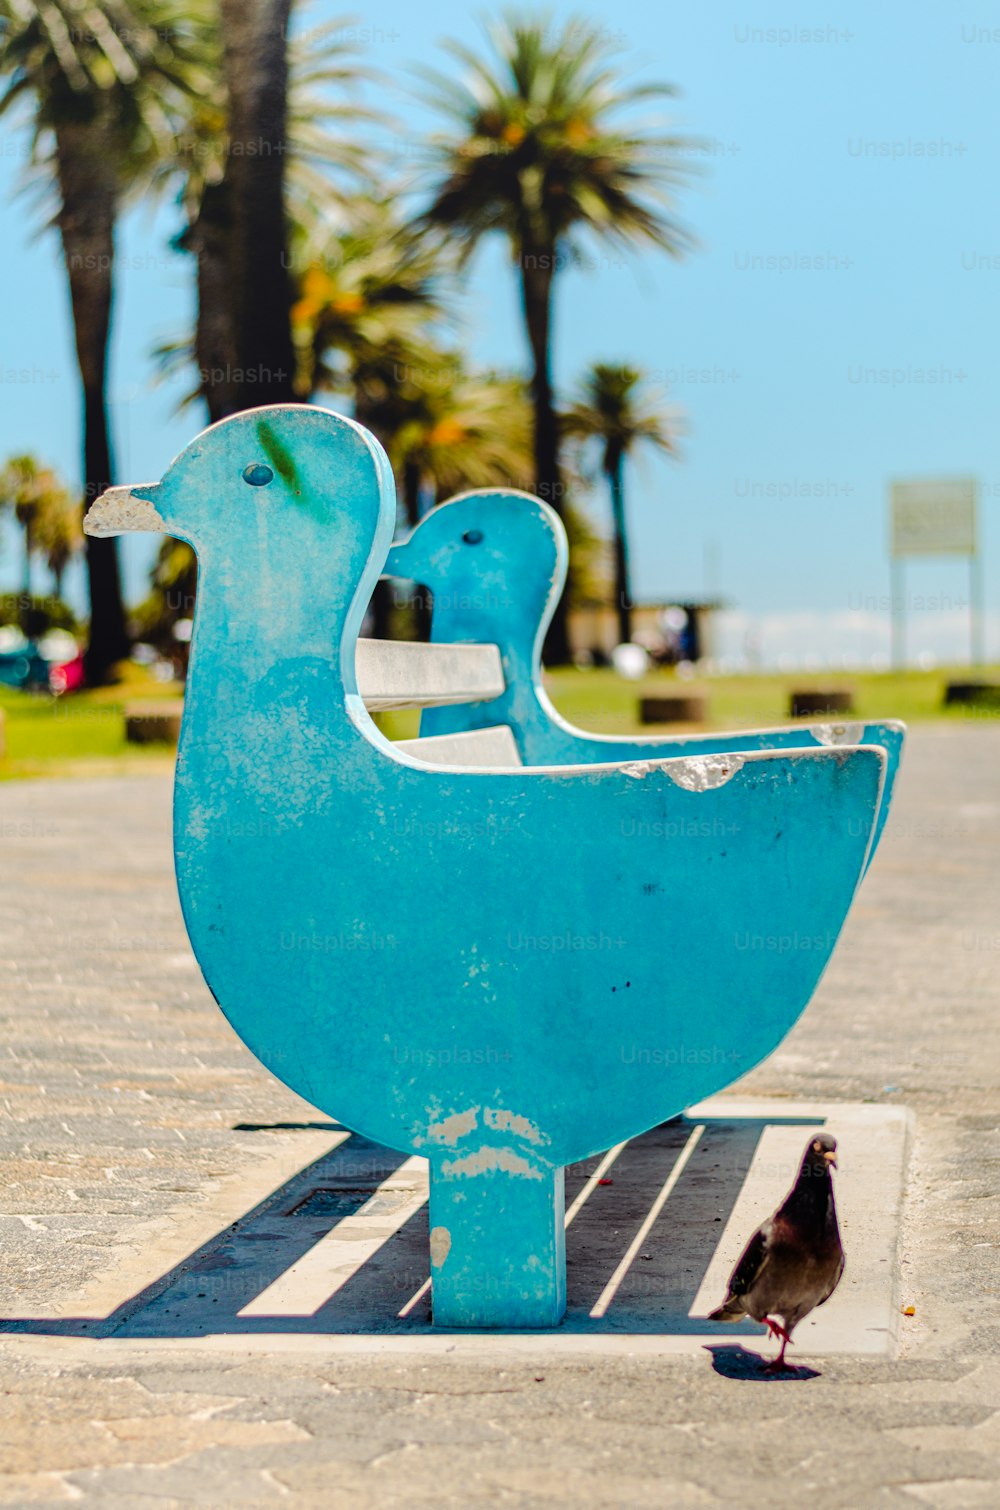 Ein kleiner Vogel steht neben einer blauen Skulptur